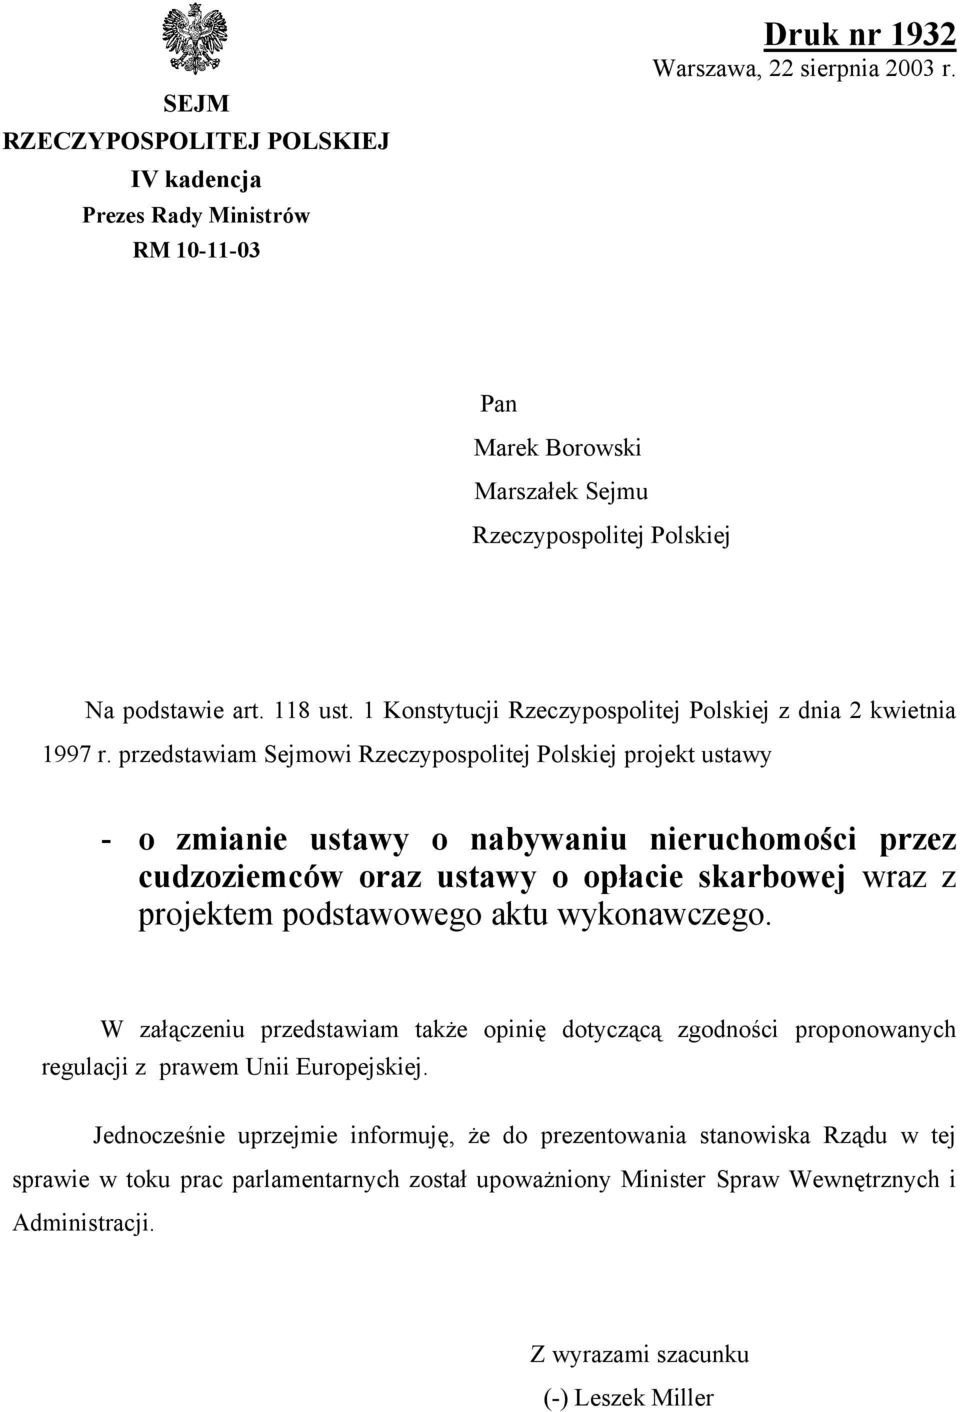 przedstawiam Sejmowi Rzeczypospolitej Polskiej projekt ustawy - o zmianie ustawy o nabywaniu nieruchomości przez cudzoziemców oraz ustawy o opłacie skarbowej wraz z projektem podstawowego aktu